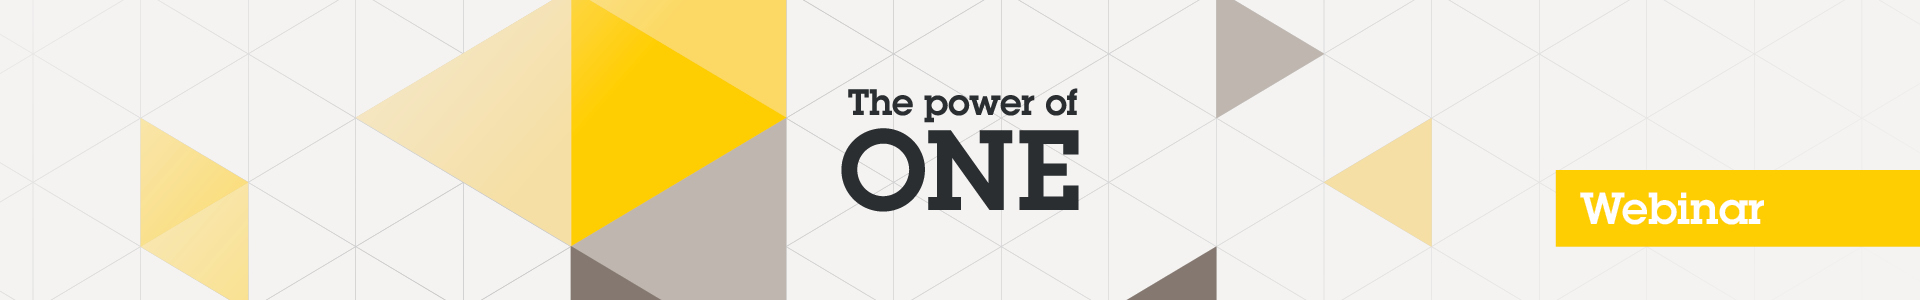 Webinar E2E Axis - The Power of ONE